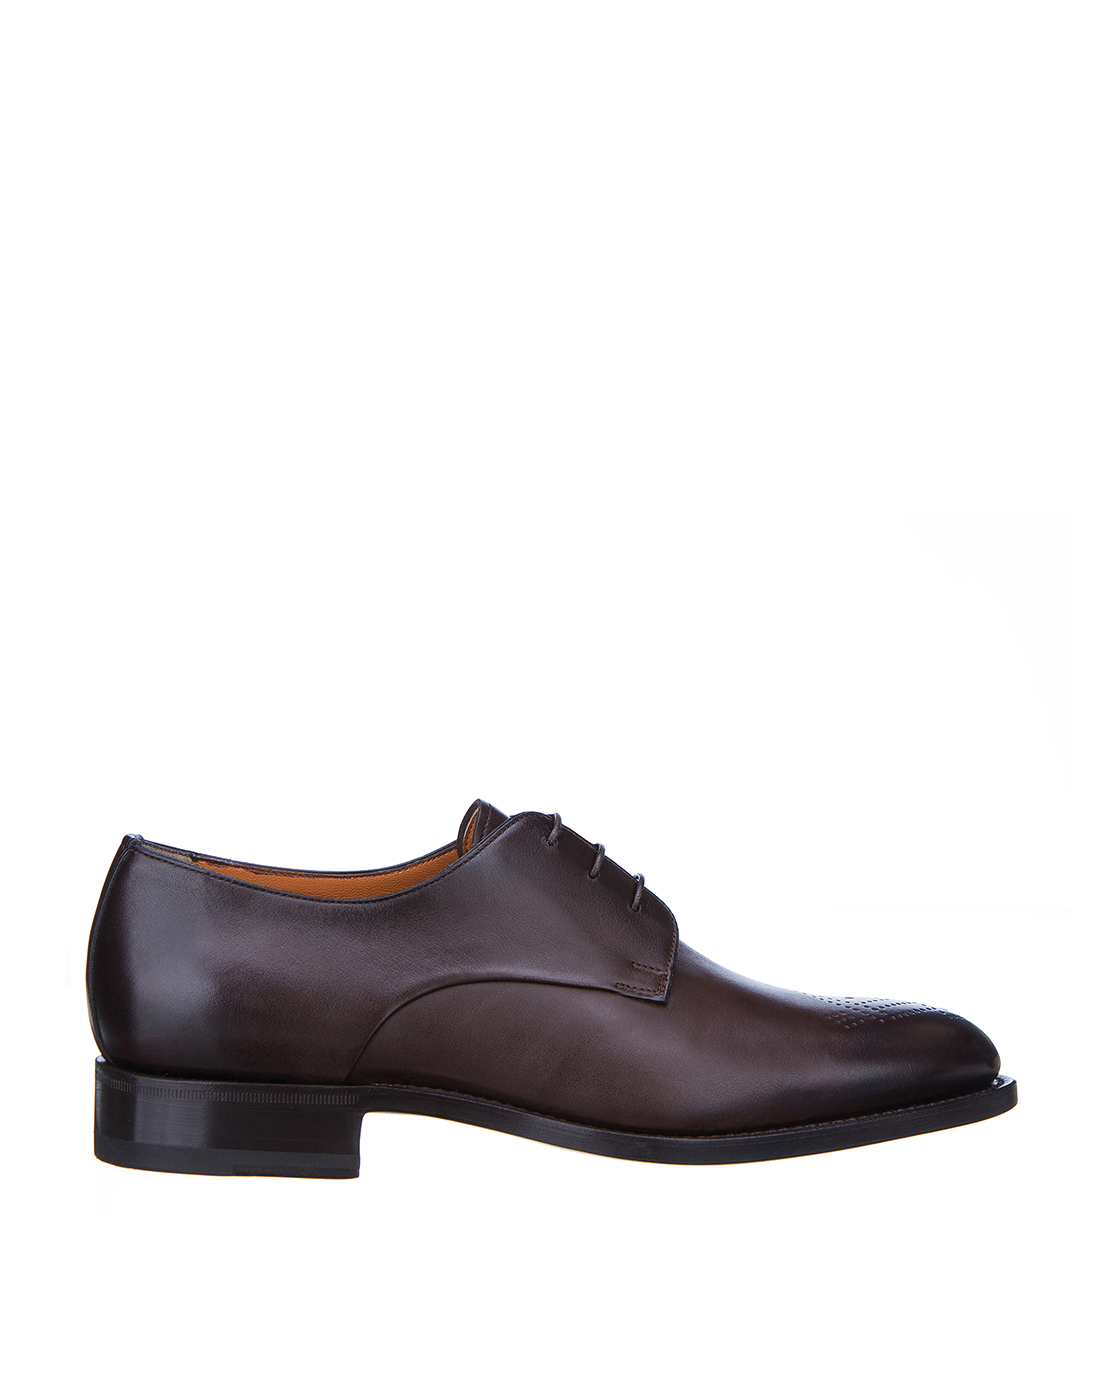 Туфли коричневые мужские Santoni S15949-1